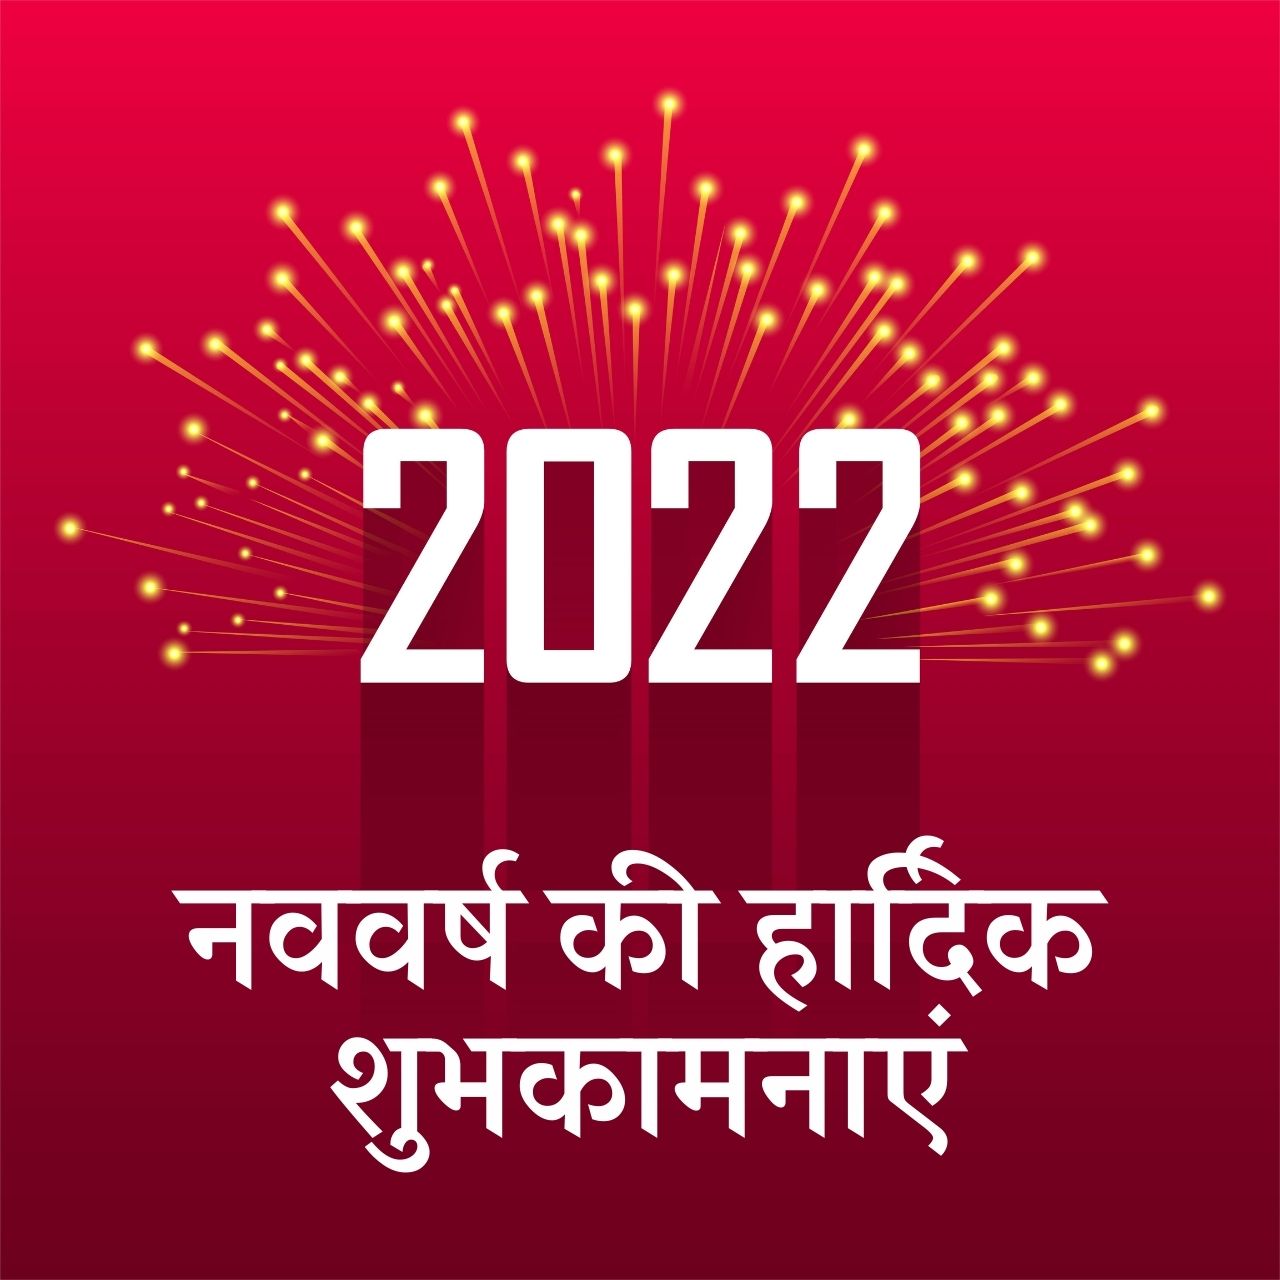 سنة جديدة سعيدة 2022 الهندية Shayari ، التمنيات ، ونقلت ، صور عالية الدقة ، تحيات ، رسائل ، وحالة للمشاركة